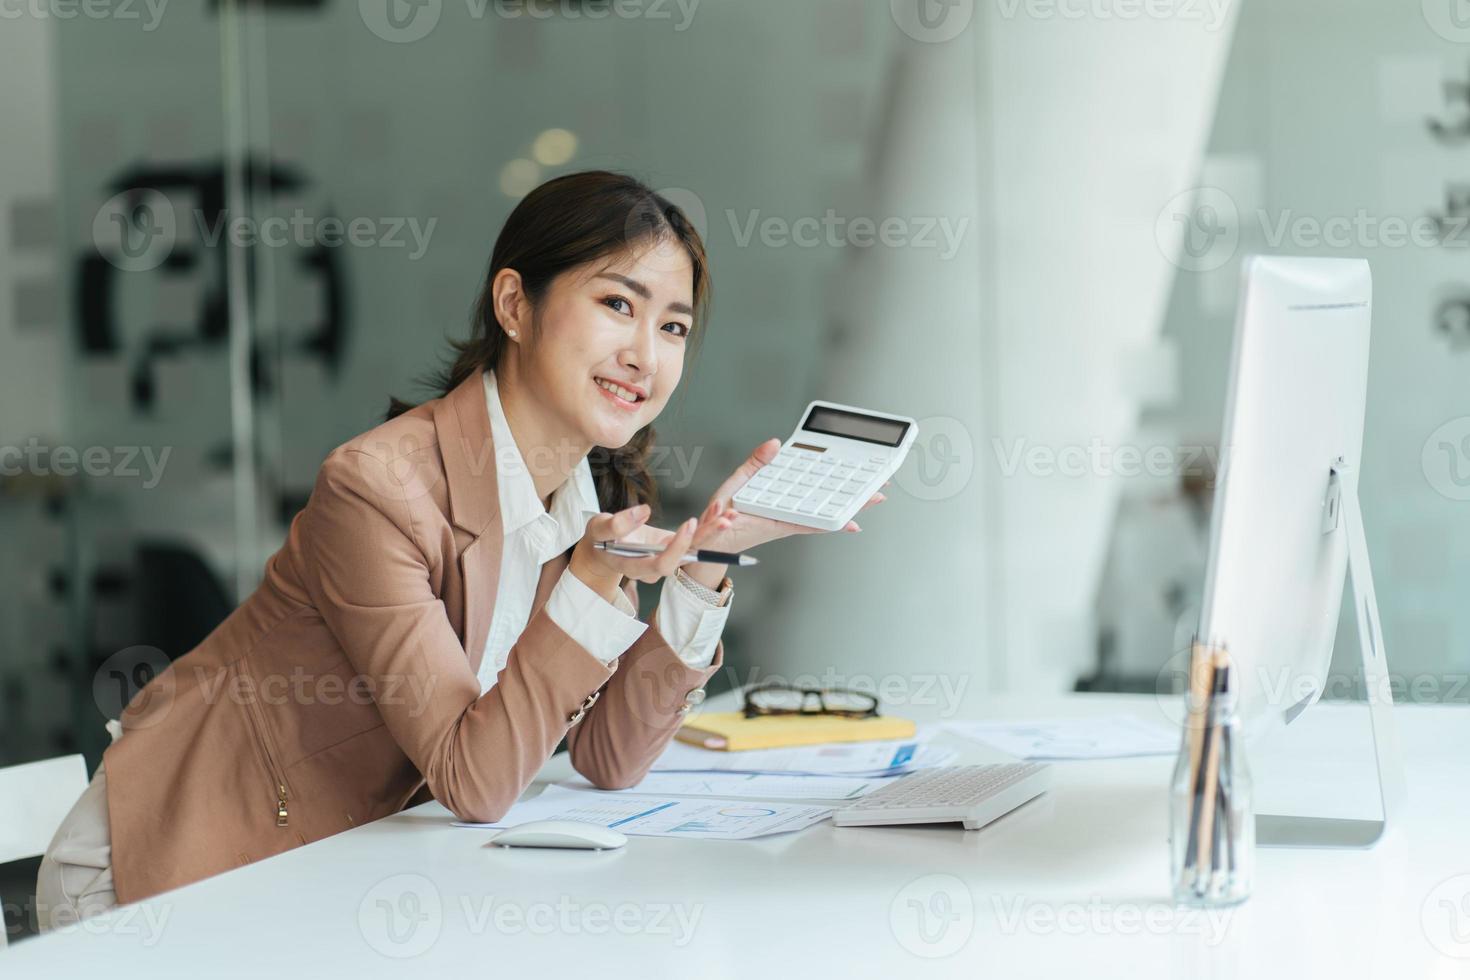 heureuse femme d'affaires asiatique attrayante travaillant avec un ordinateur portable et un document financier au bureau, action réussie, concept d'entreprise. photo